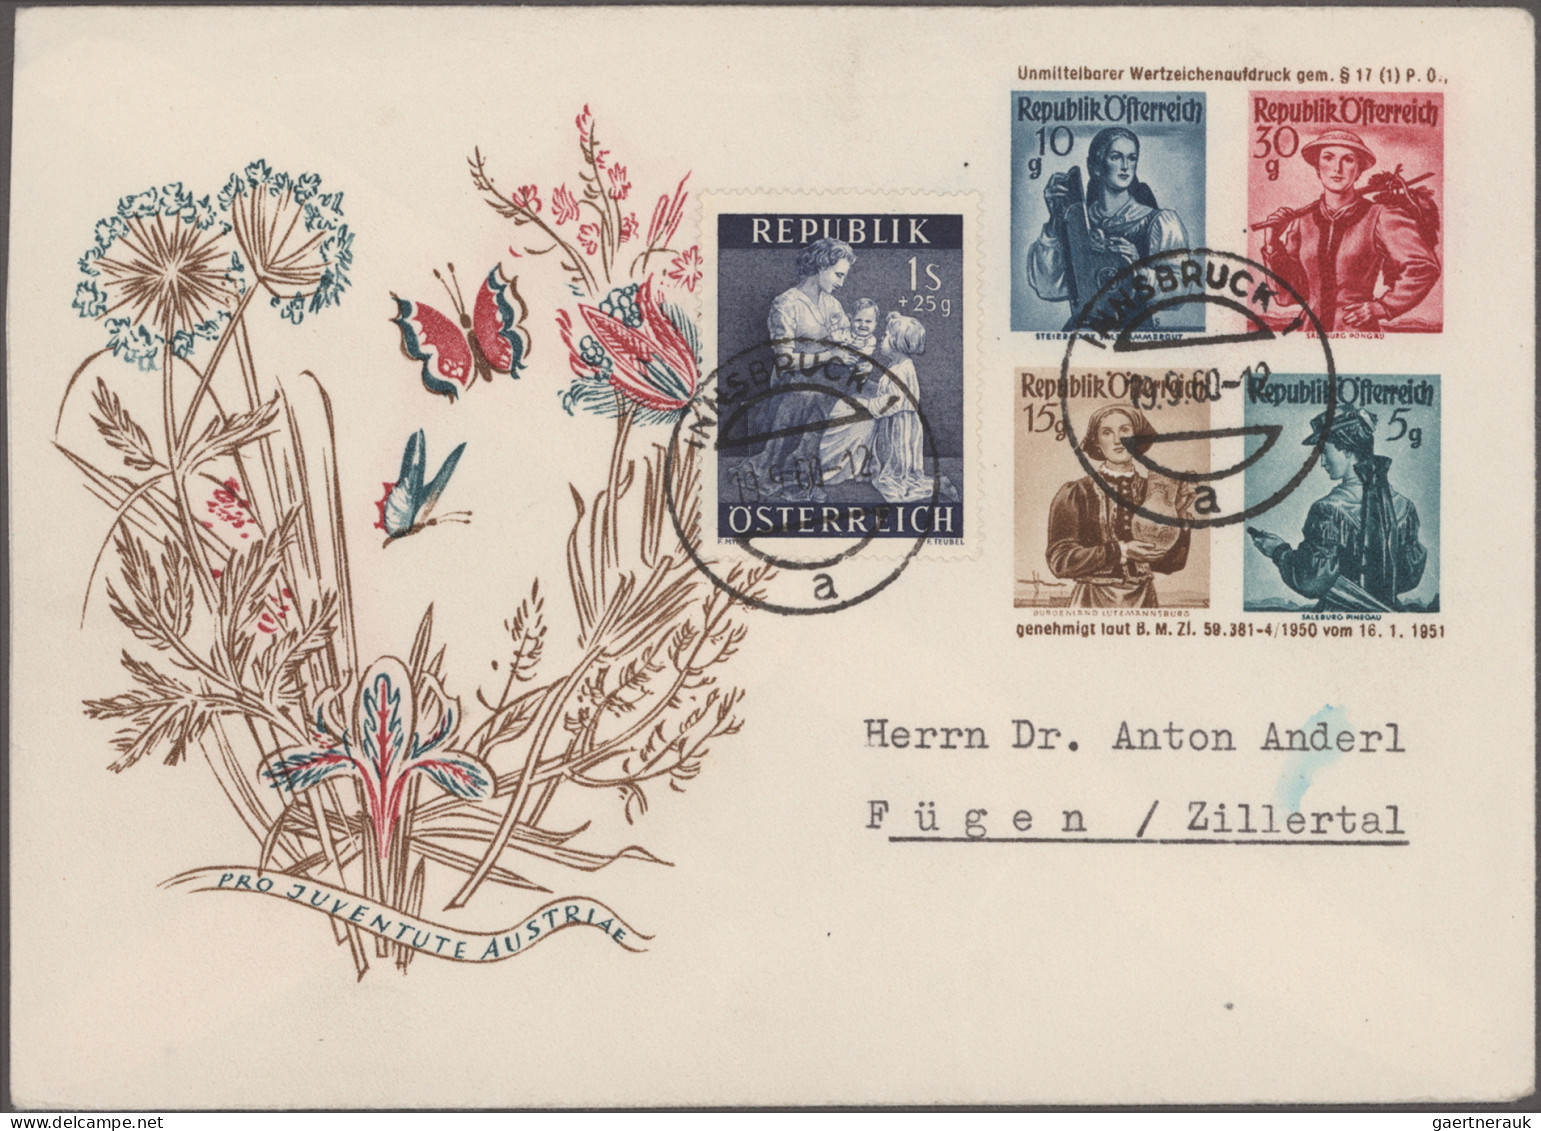 Worldwide Postal Stationery: 1870-1970, Karton mit über 1.000 zumeist gebrauchte